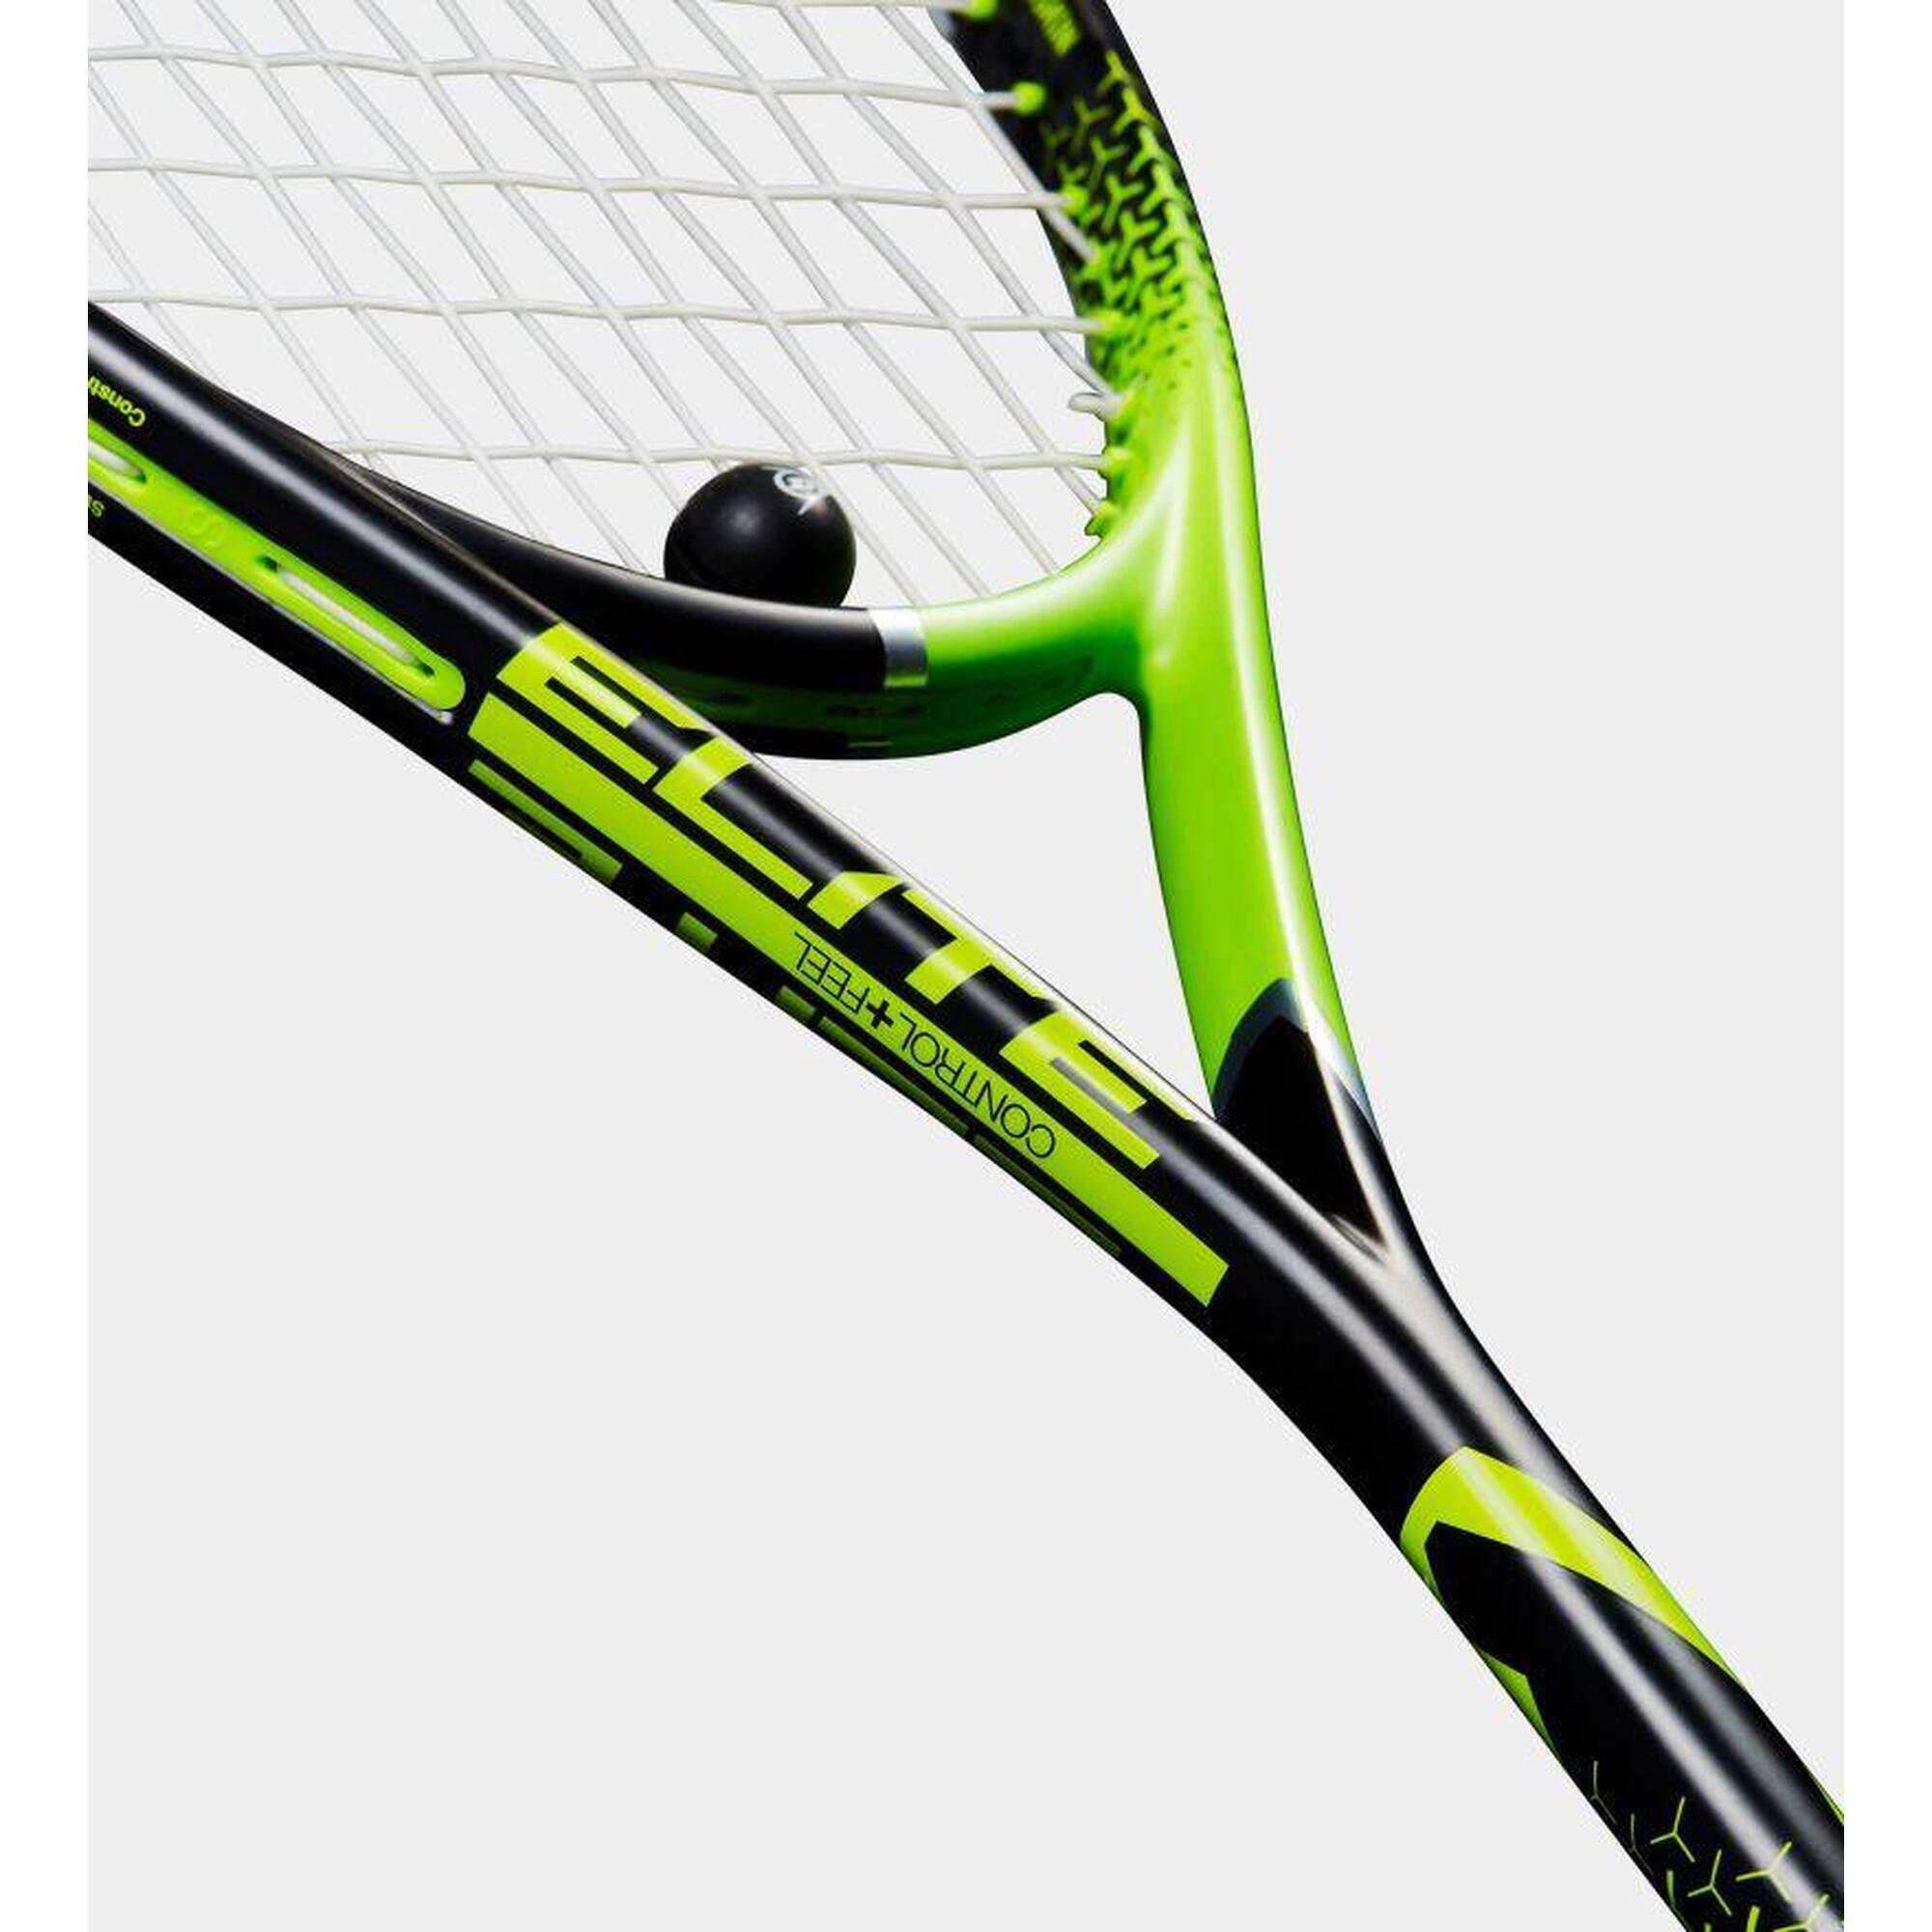 Precision Elite 135 Unisex Carbon Fiber Squash Racket- Black